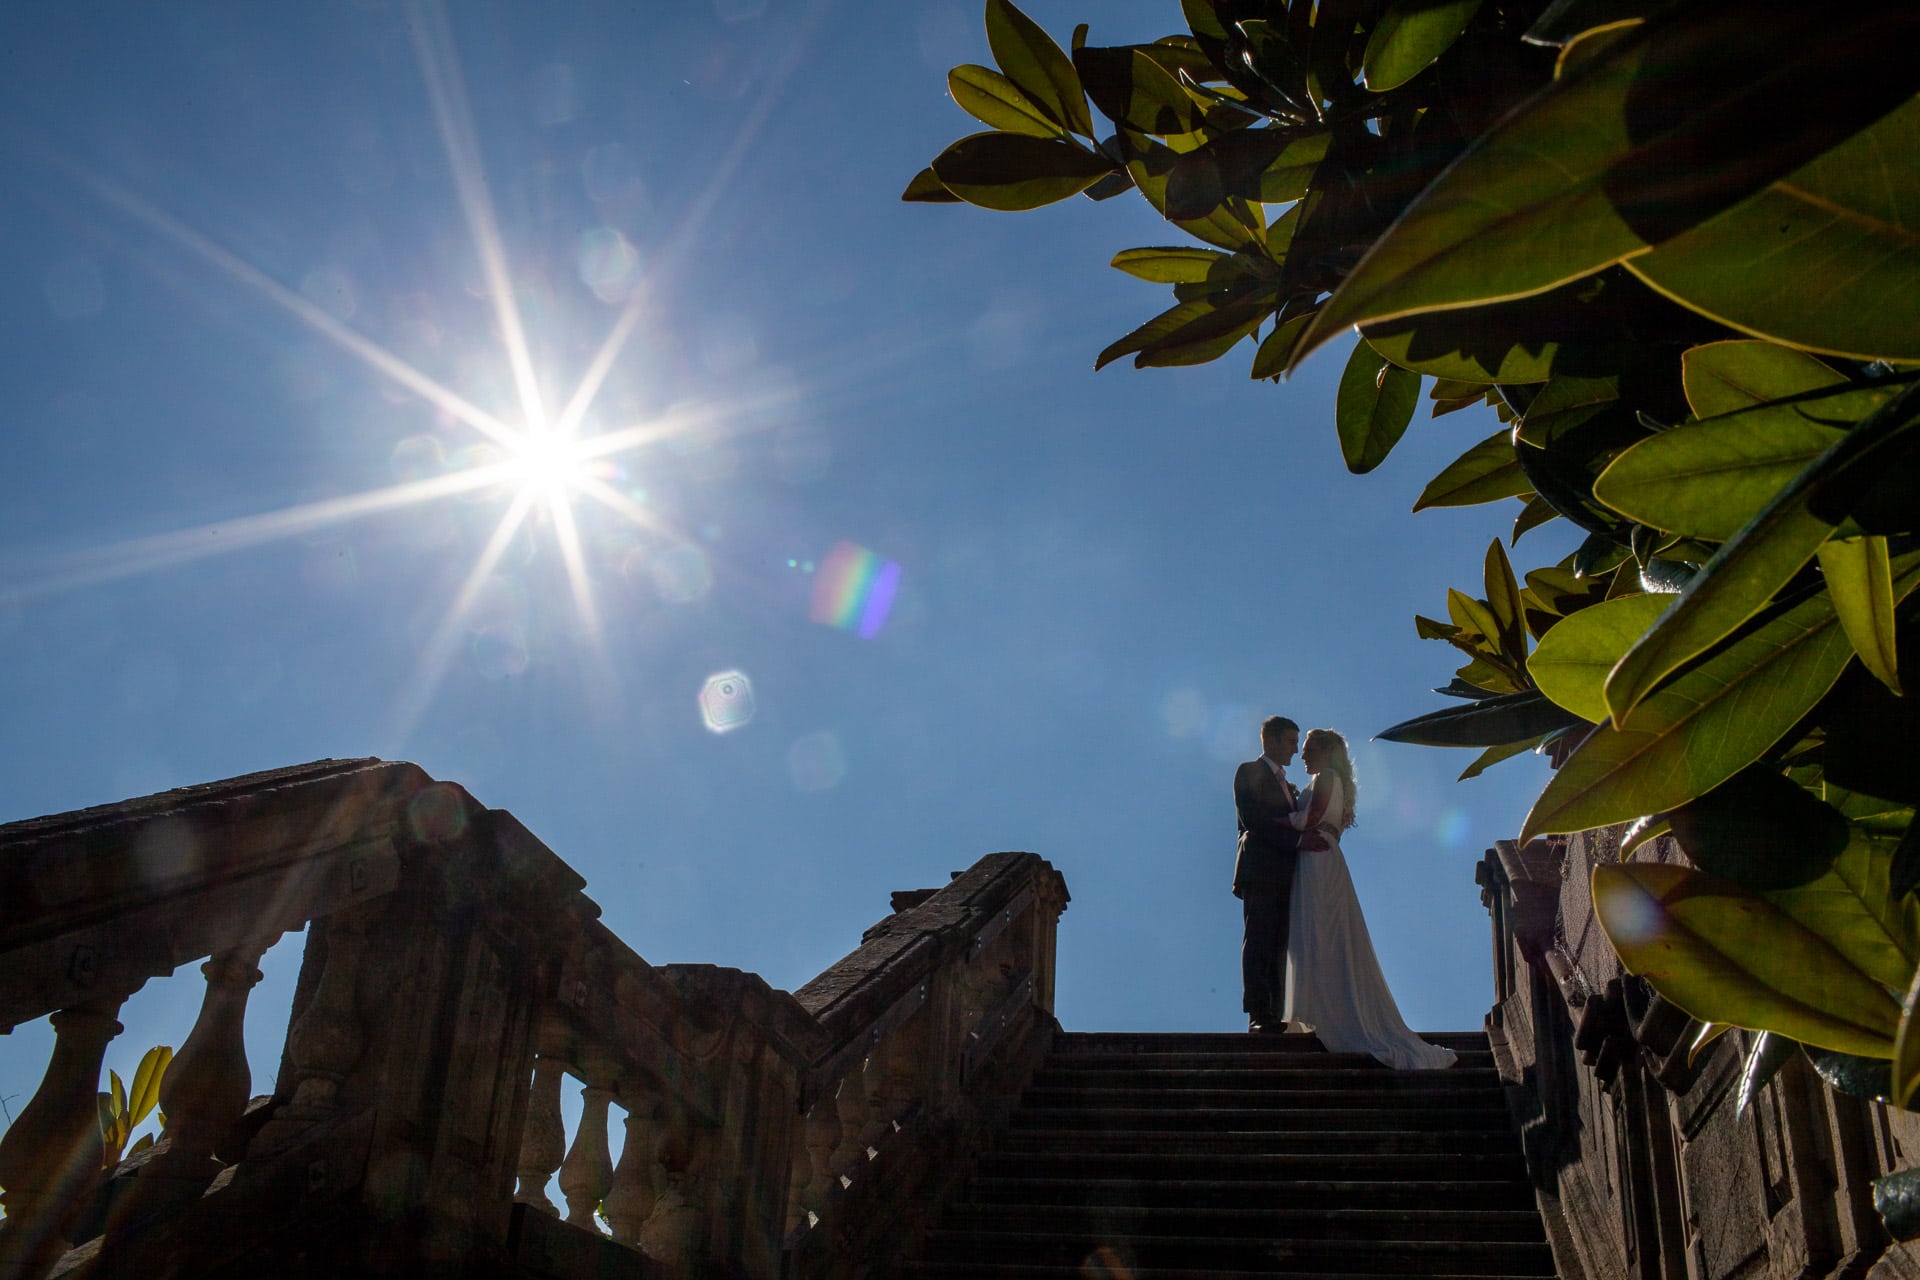 starburst sun in a wedding photo